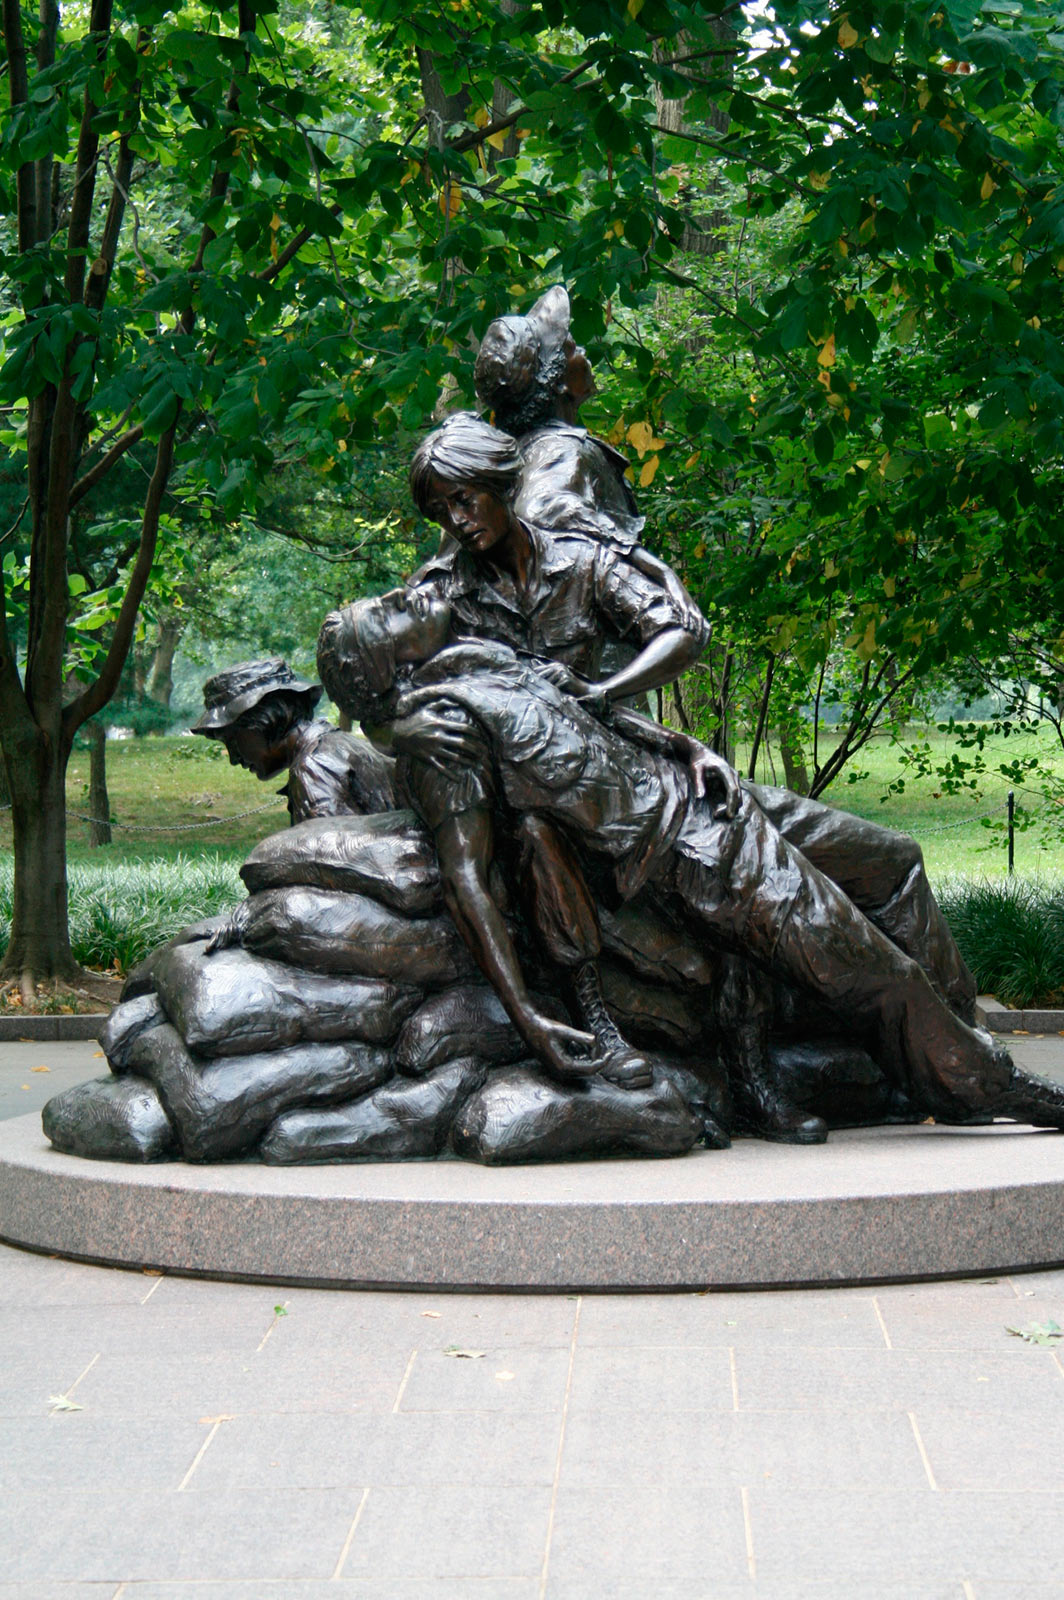 Memorial das Mulheres Veteranas do Vietnã - National Mall - Washington, DC